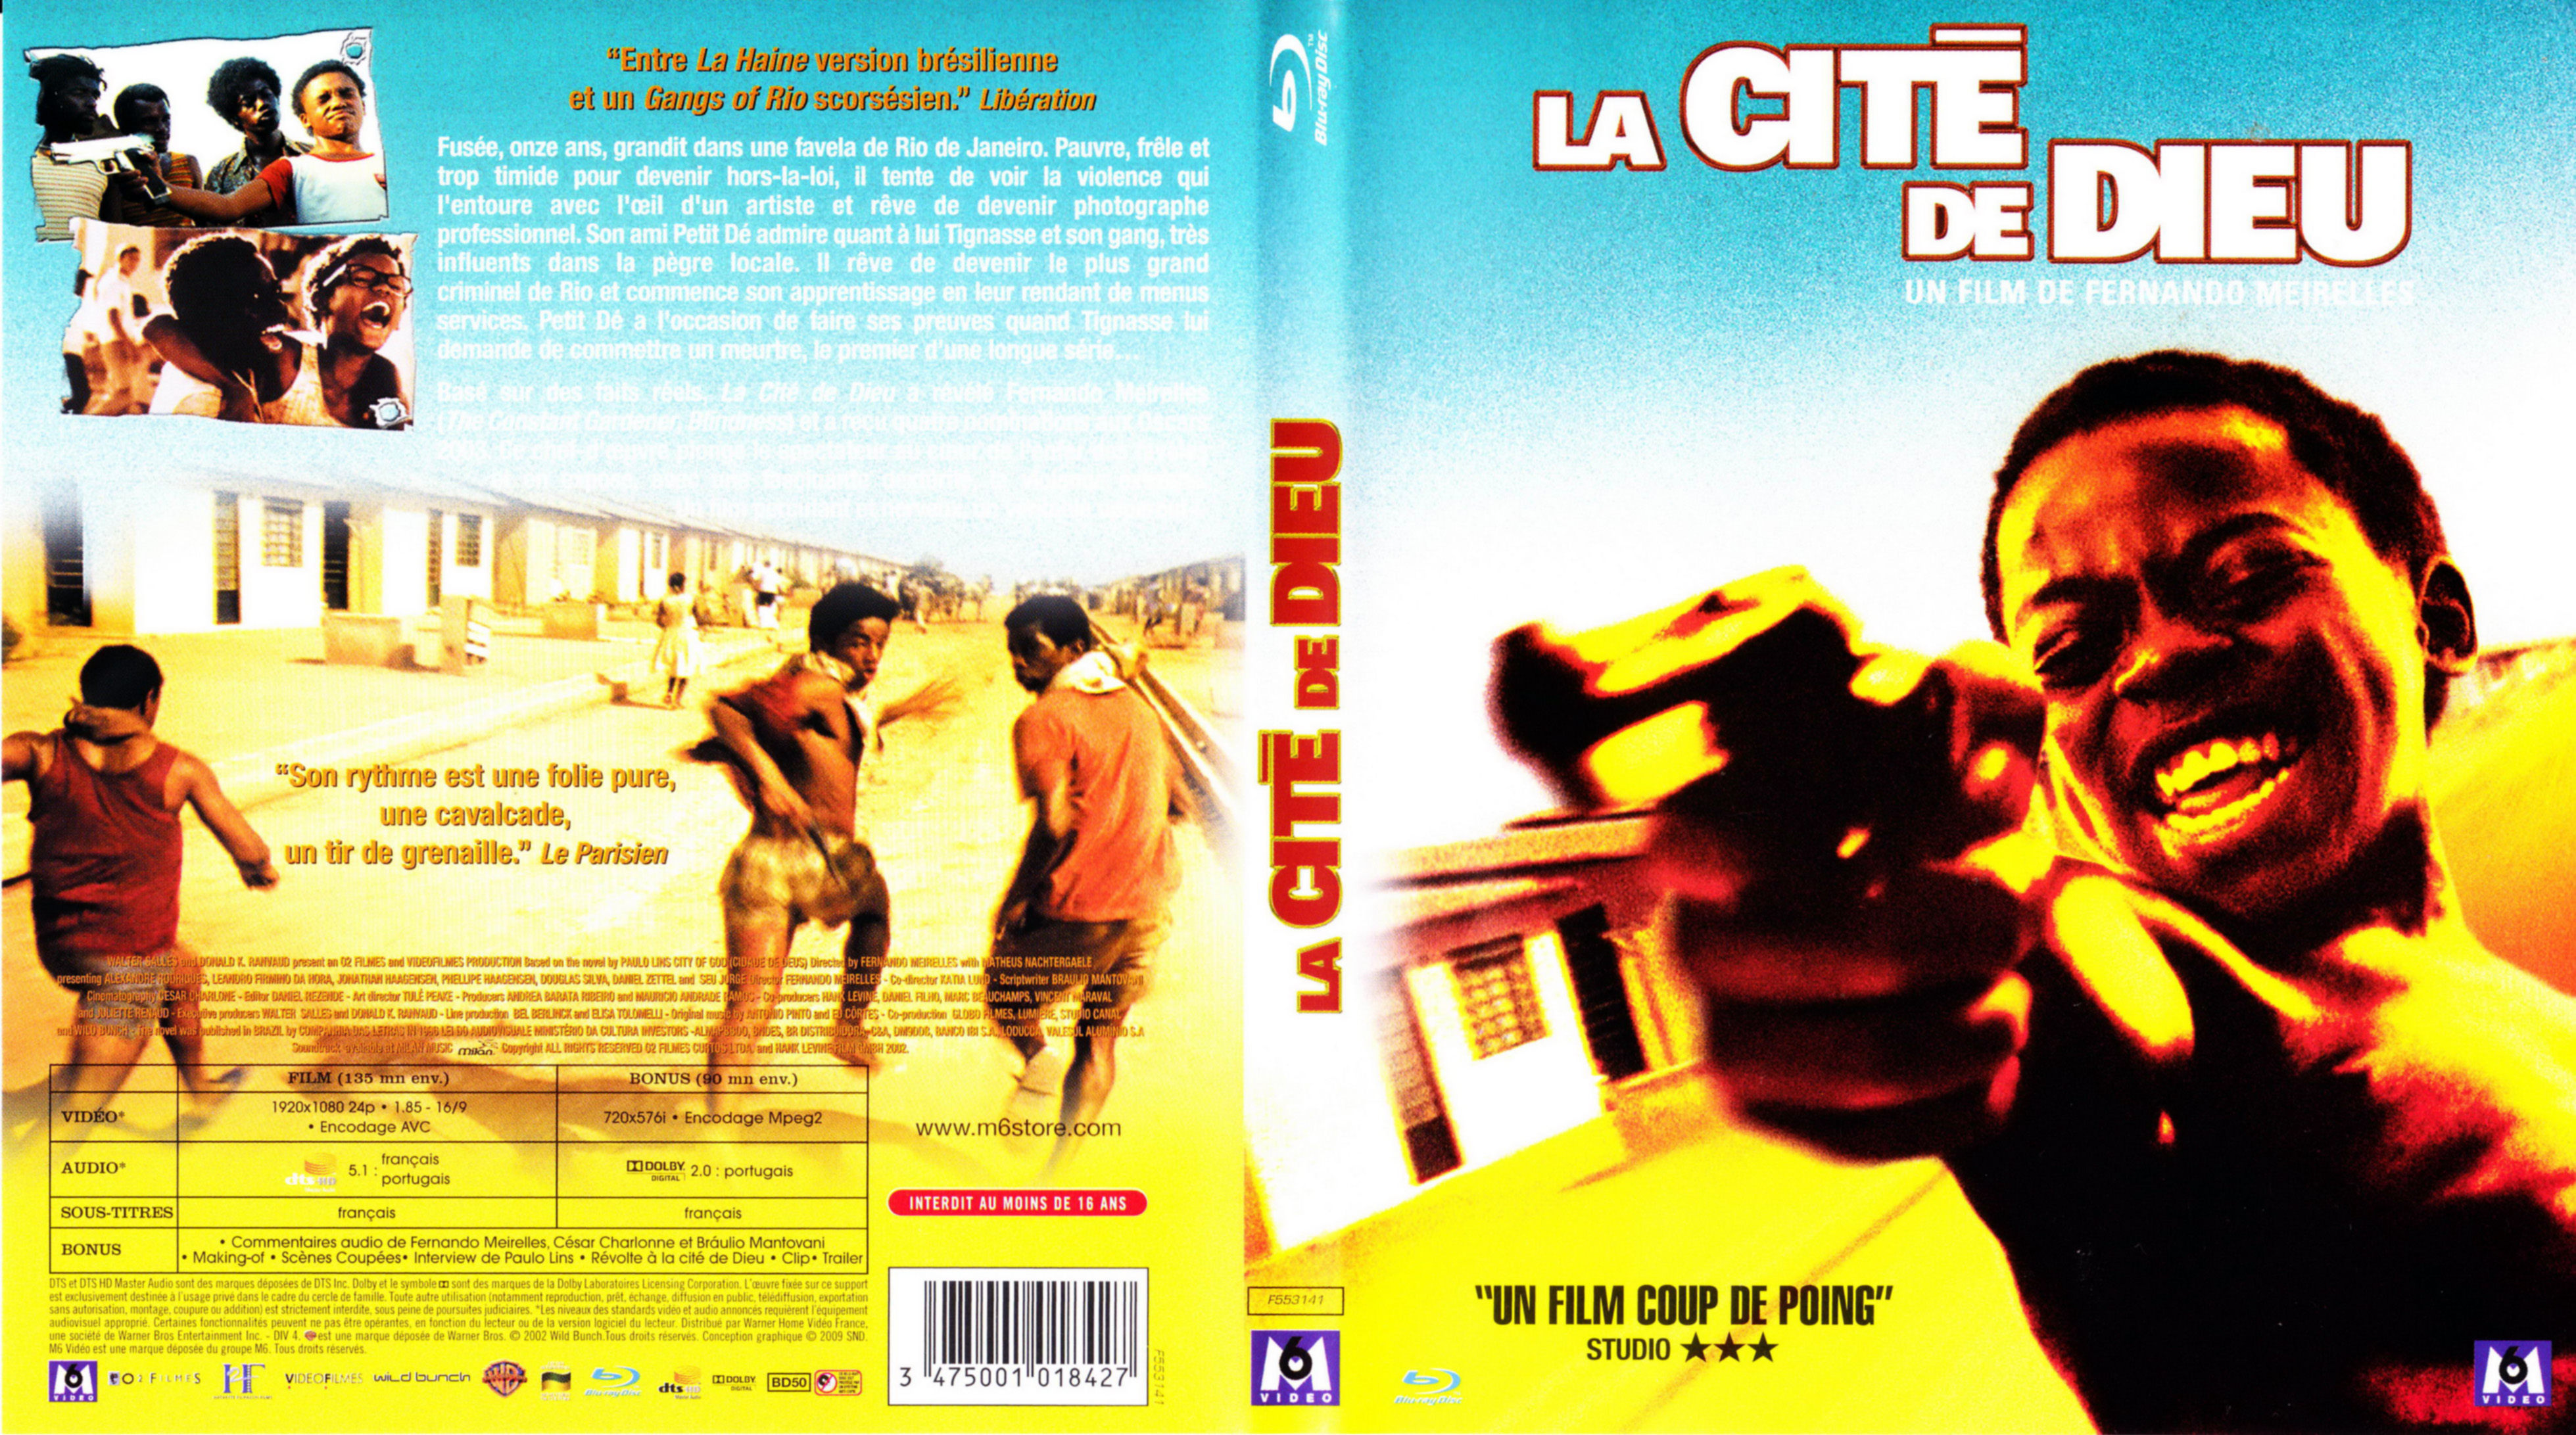 Jaquette DVD La cit de dieu (BLU-RAY)